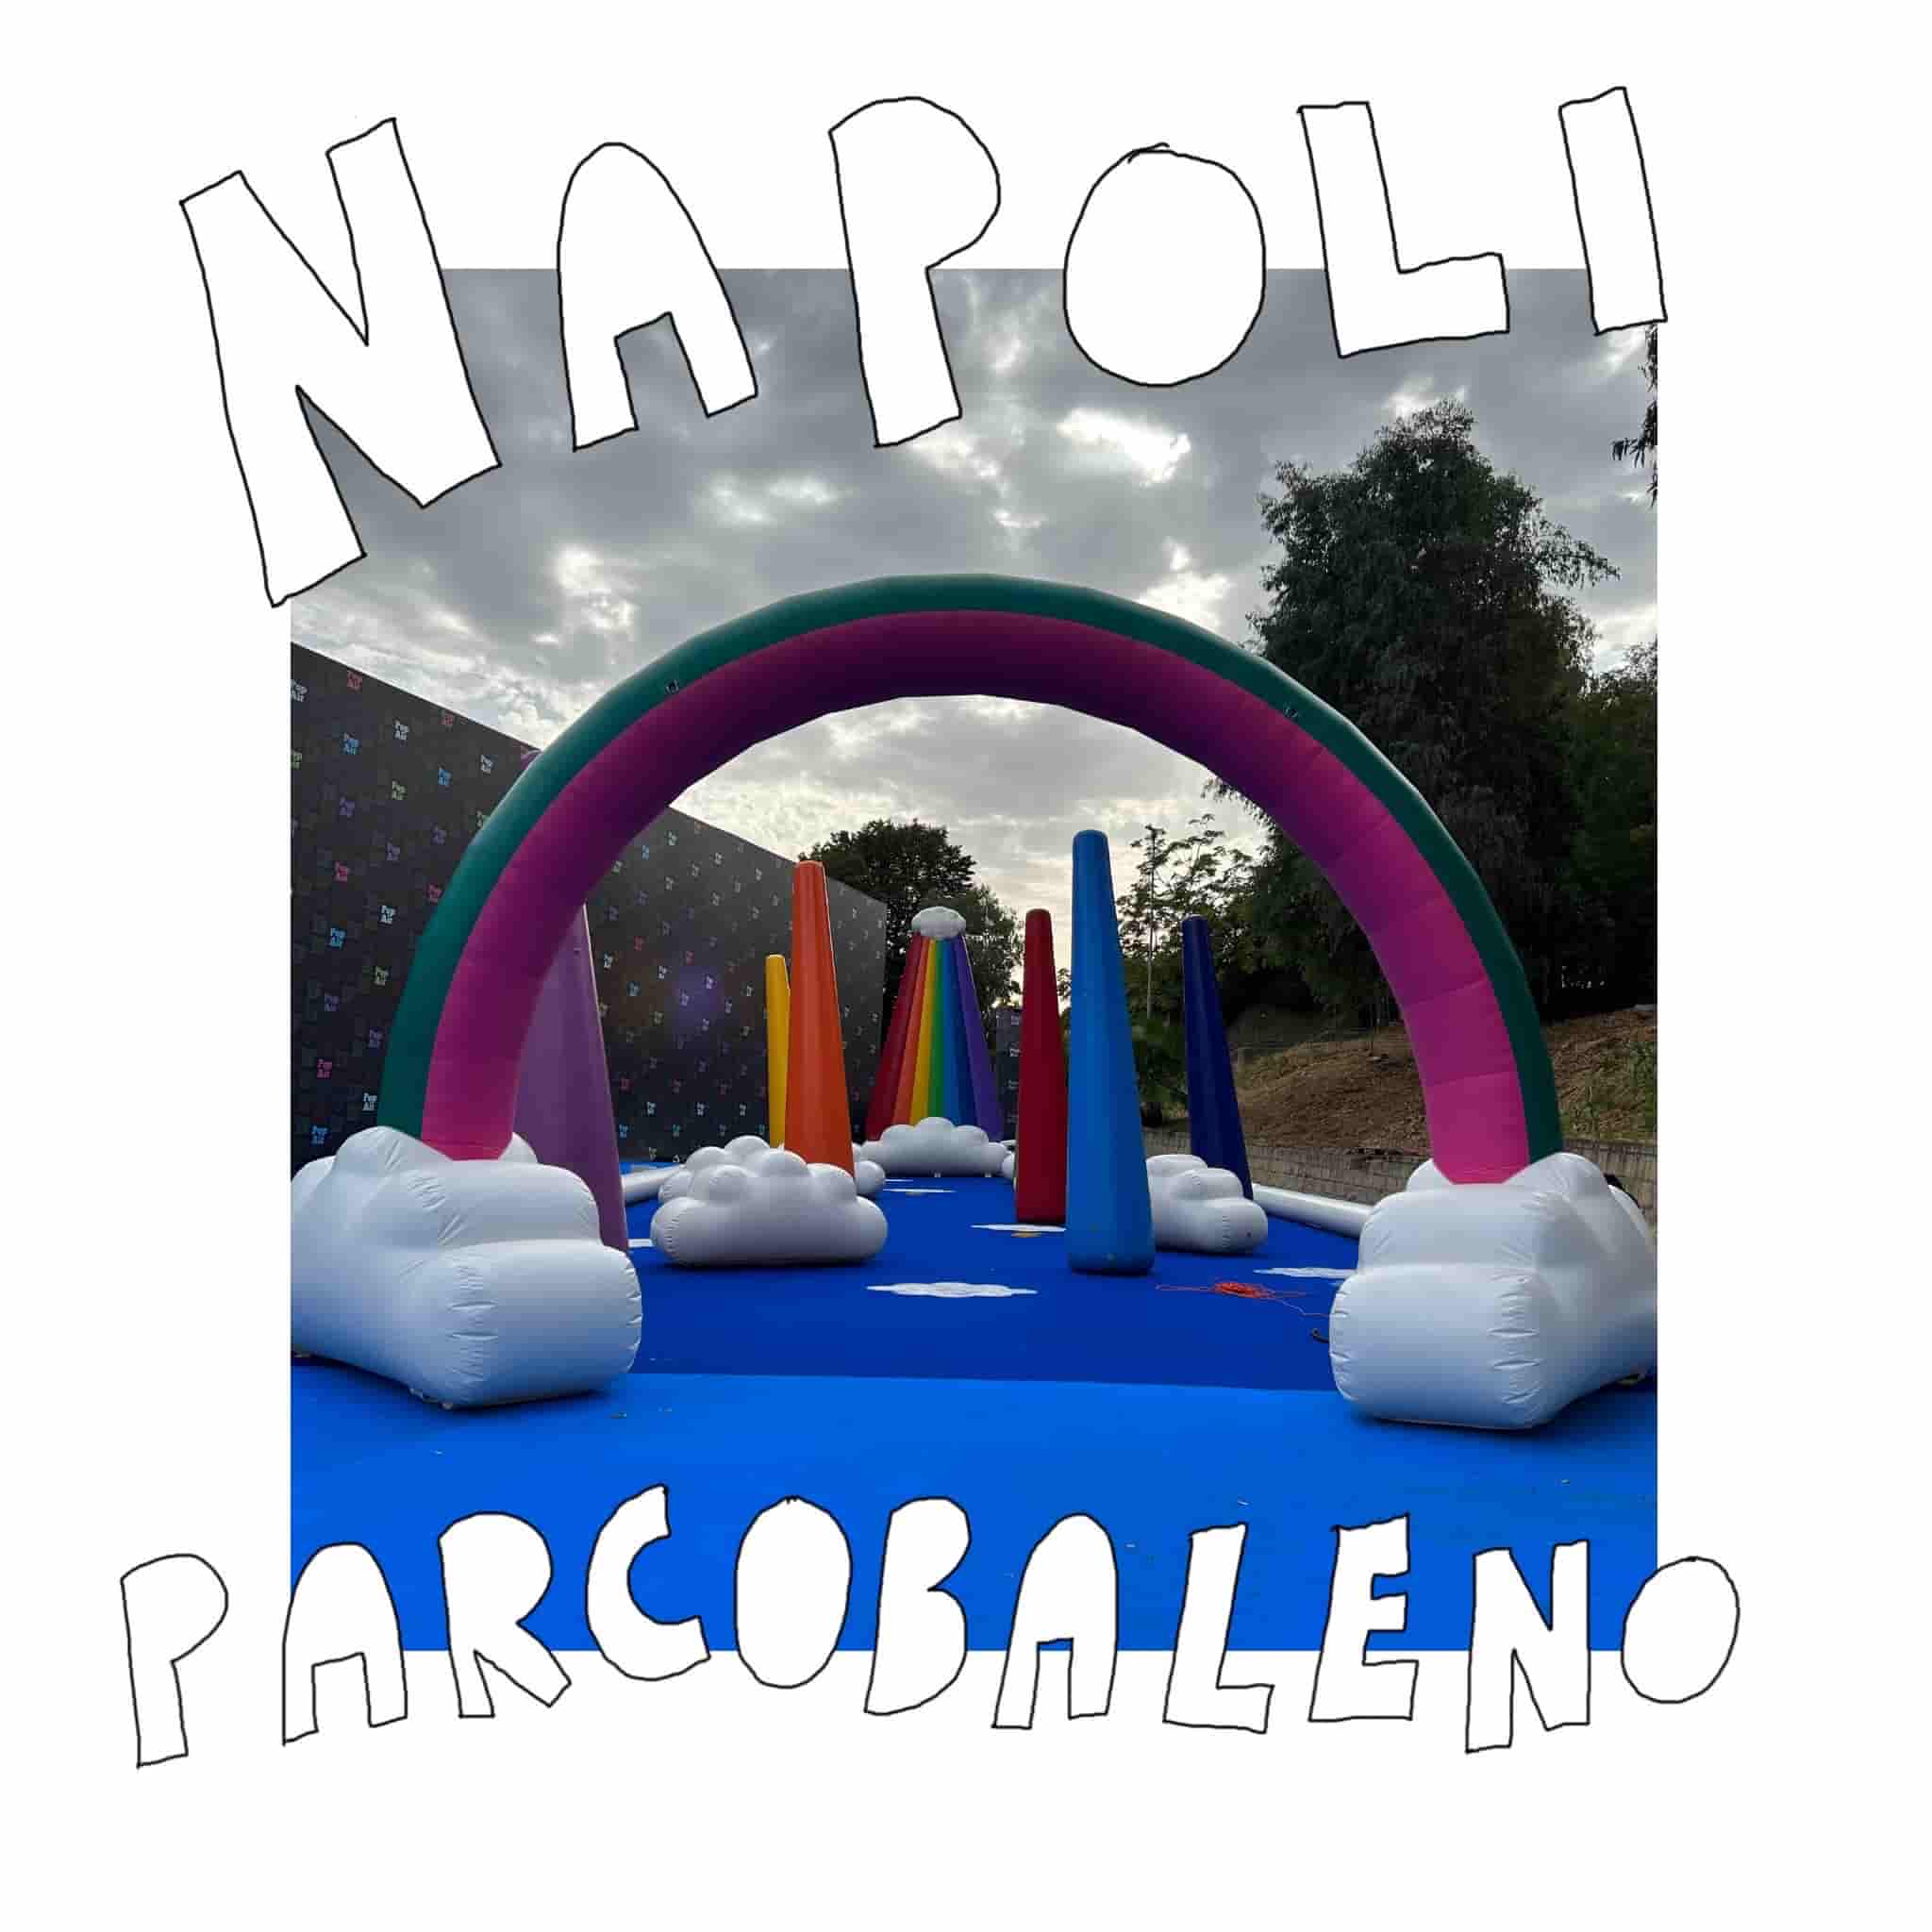 Parcobaleno, Napoli - Stefano Rossetti